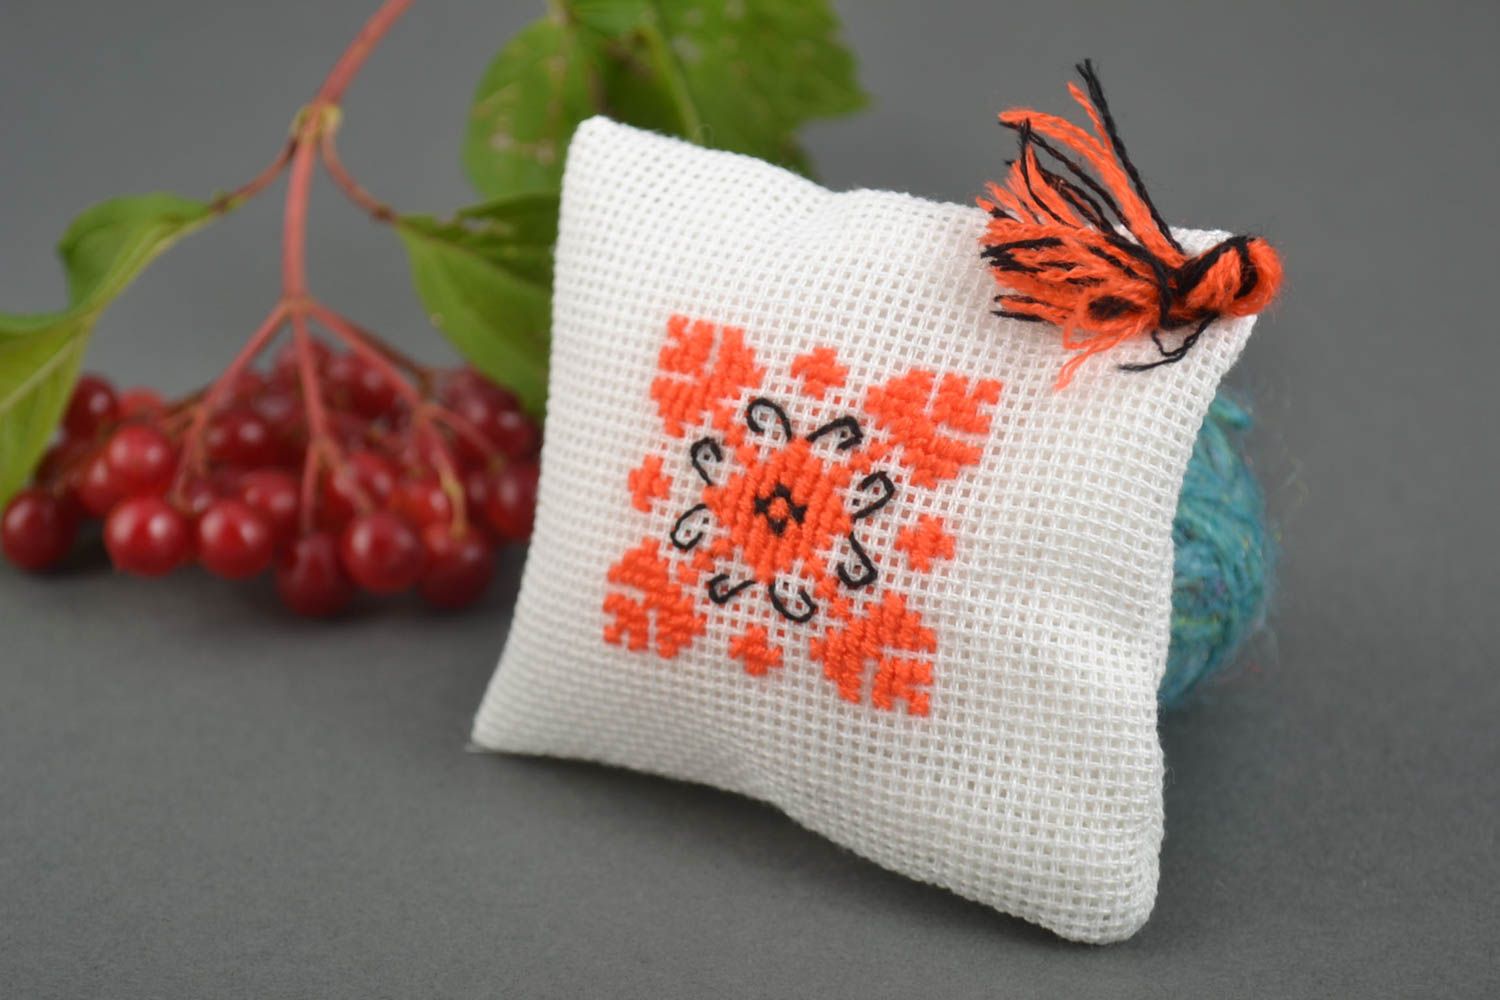 Pin cushion sewing accessories handmade home decor souvenir ideas home accents photo 1